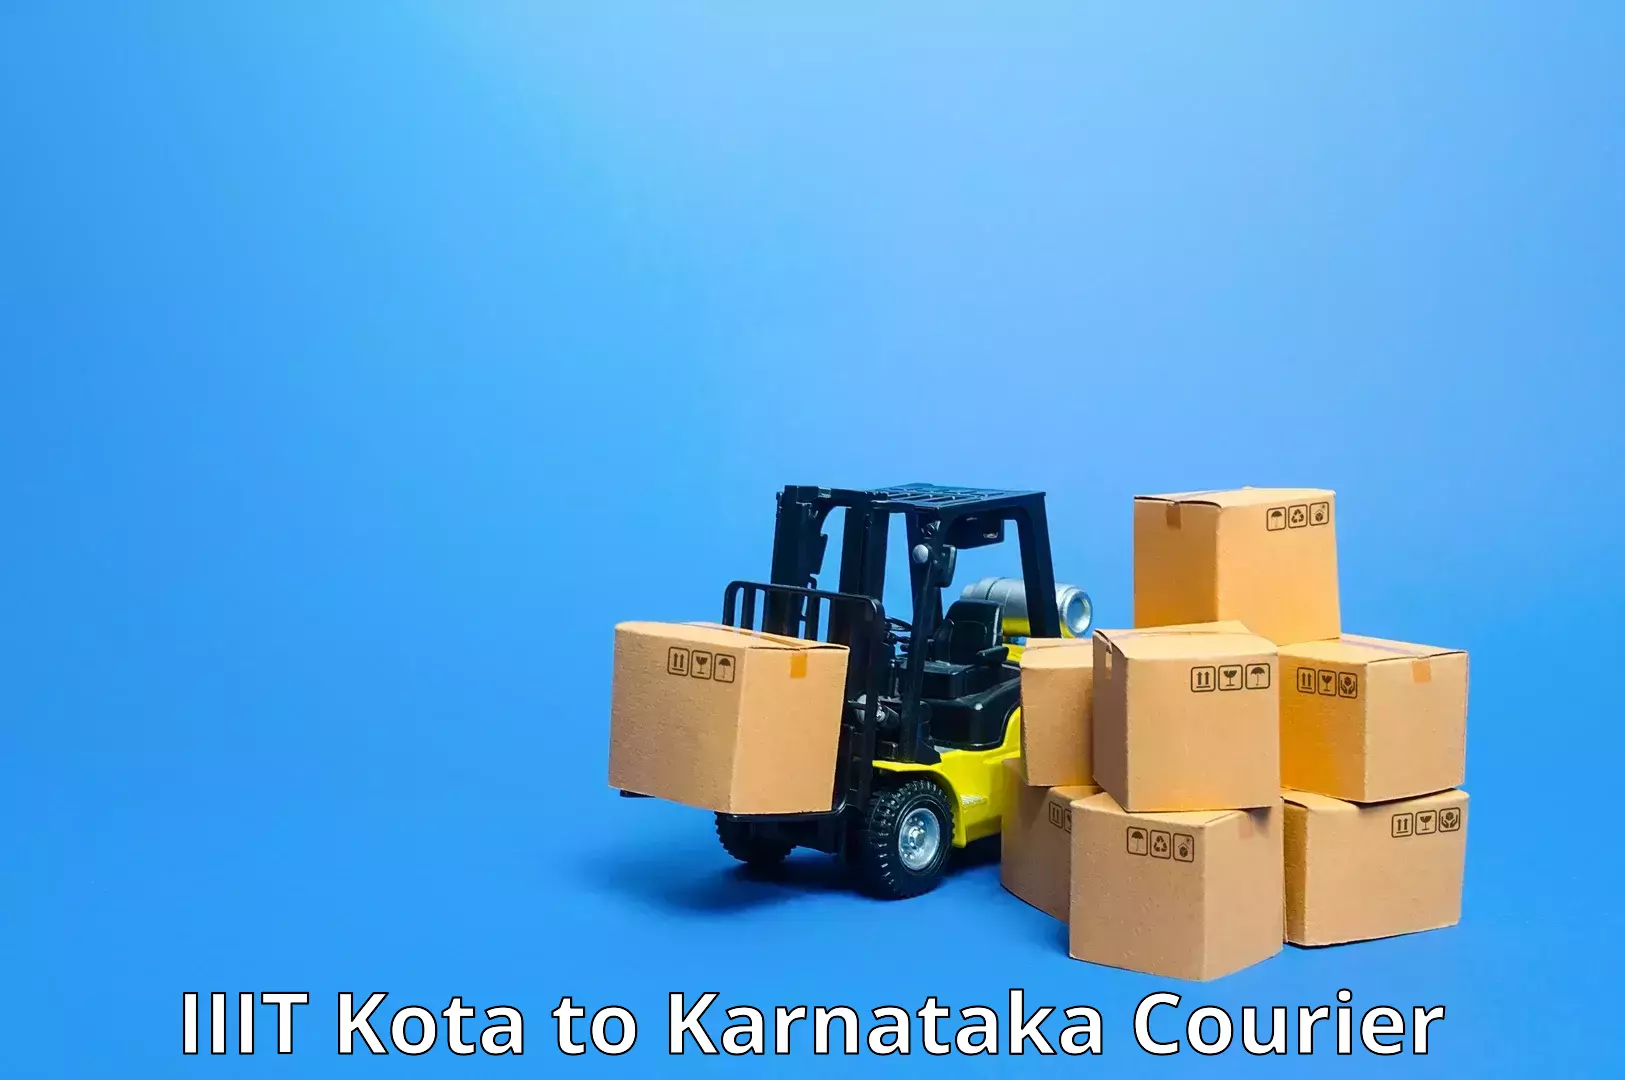 Cost-effective courier solutions IIIT Kota to Sandur